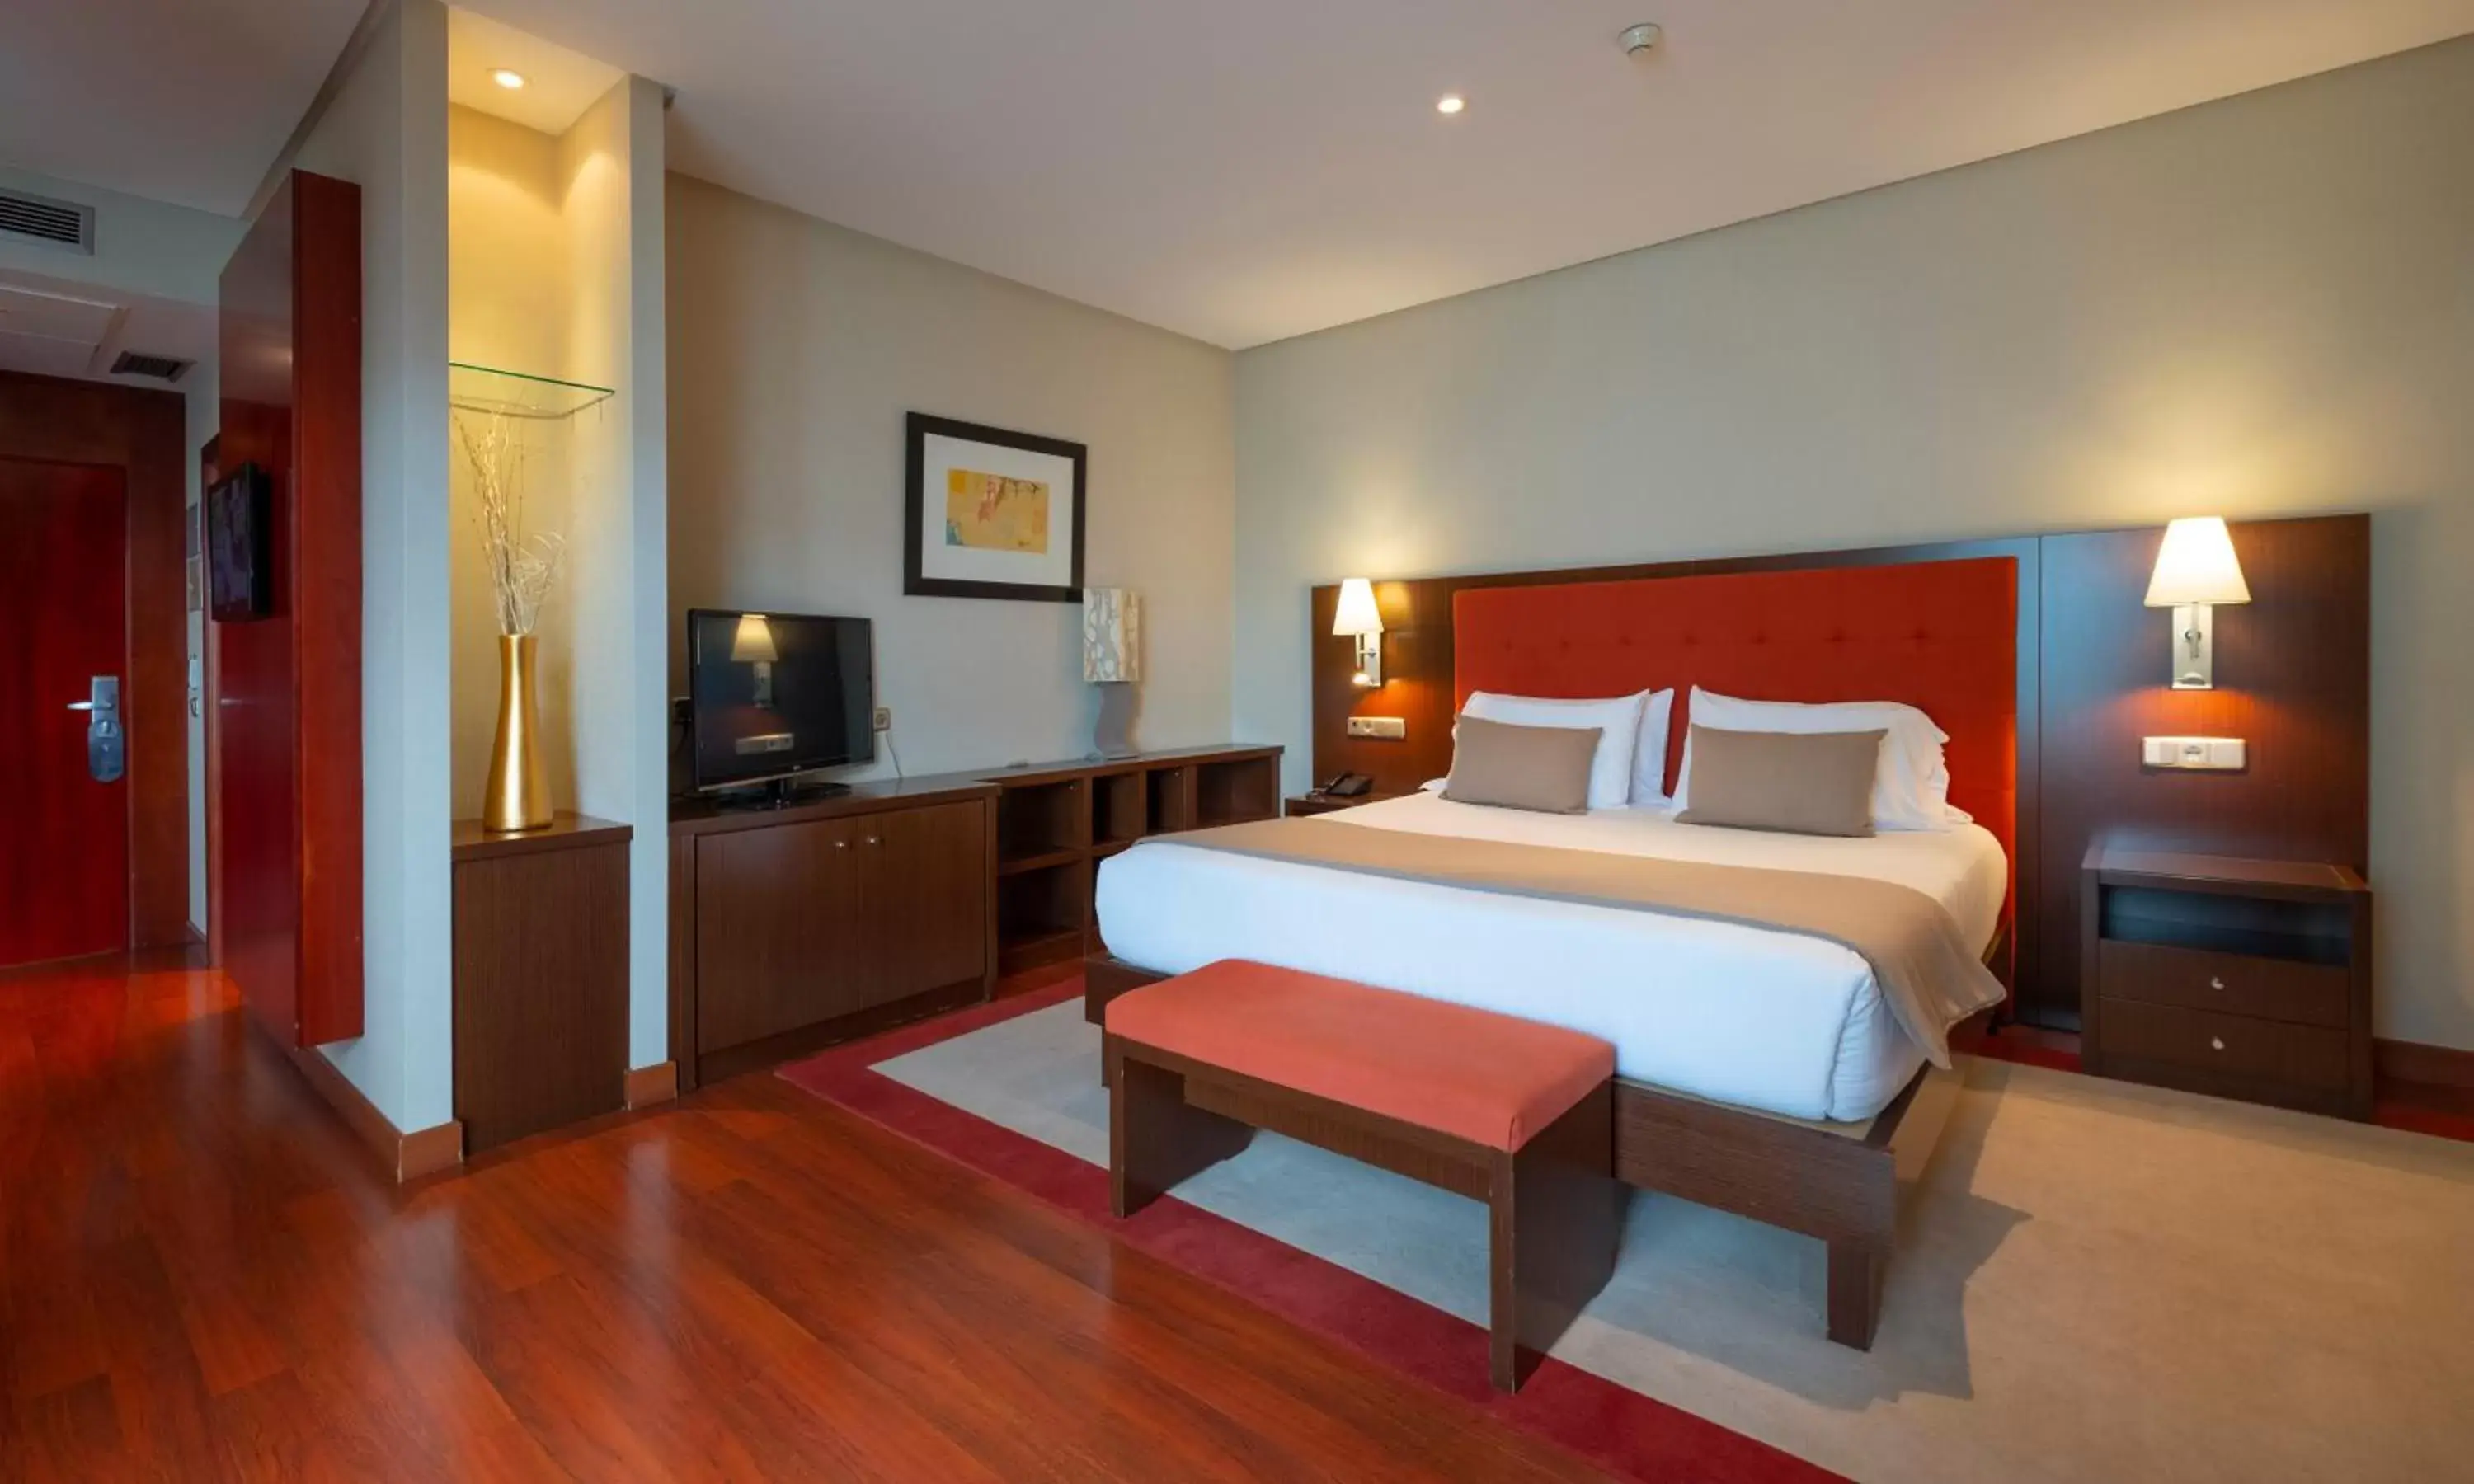 Bed in Gran Hotel Attica21 Las Rozas